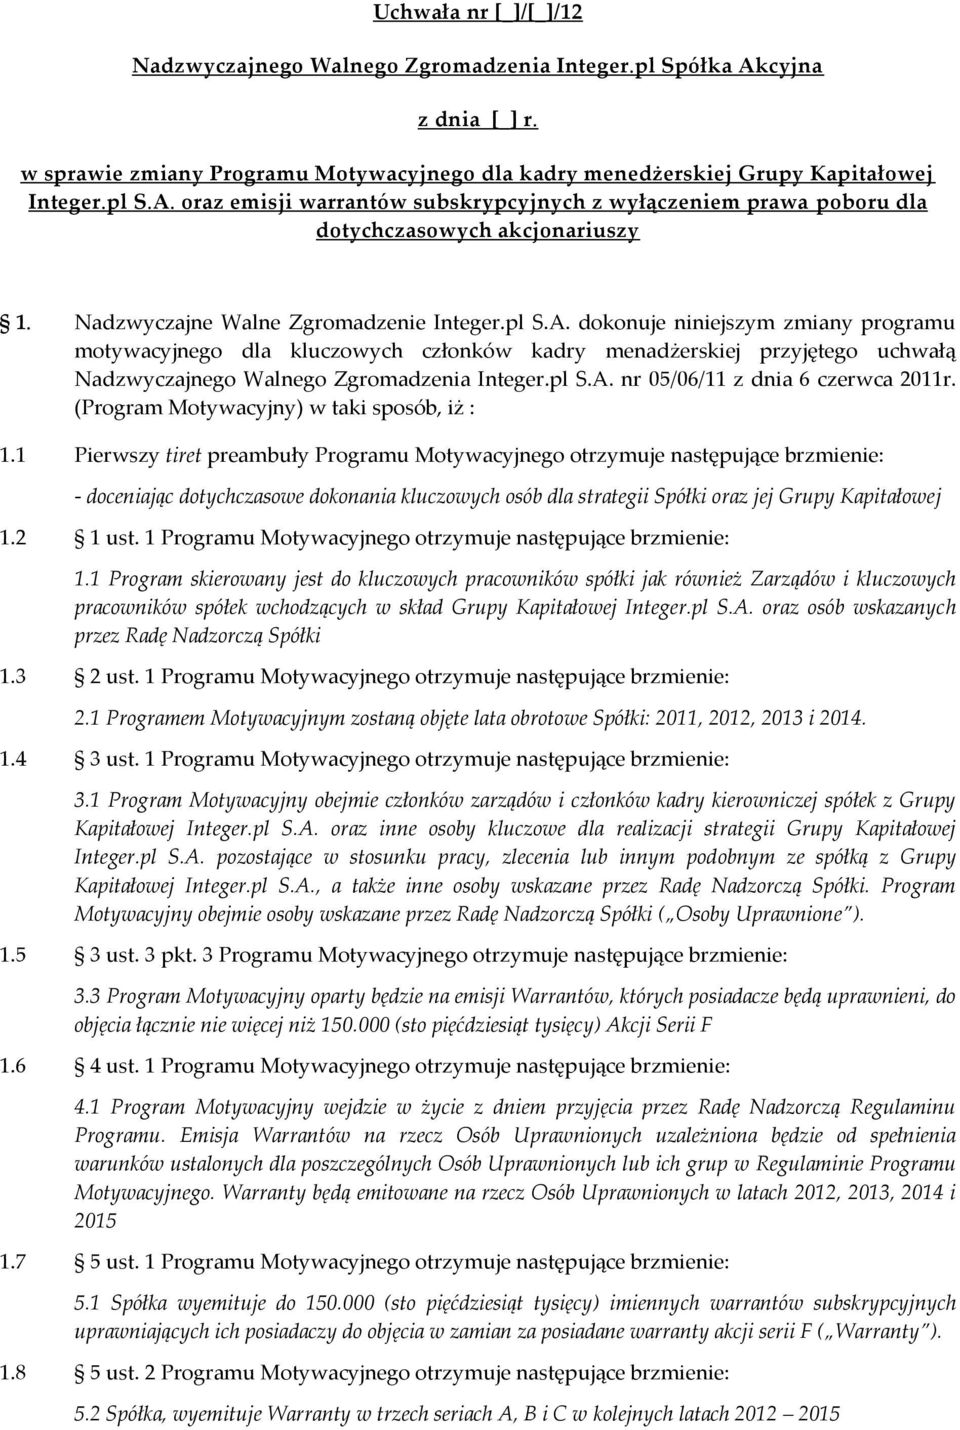 dokonuje niniejszym zmiany programu motywacyjnego dla kluczowych członków kadry menadżerskiej przyjętego uchwałą Nadzwyczajnego Walnego Zgromadzenia Integer.pl S.A. nr 05/06/11 z dnia 6 czerwca 2011r.